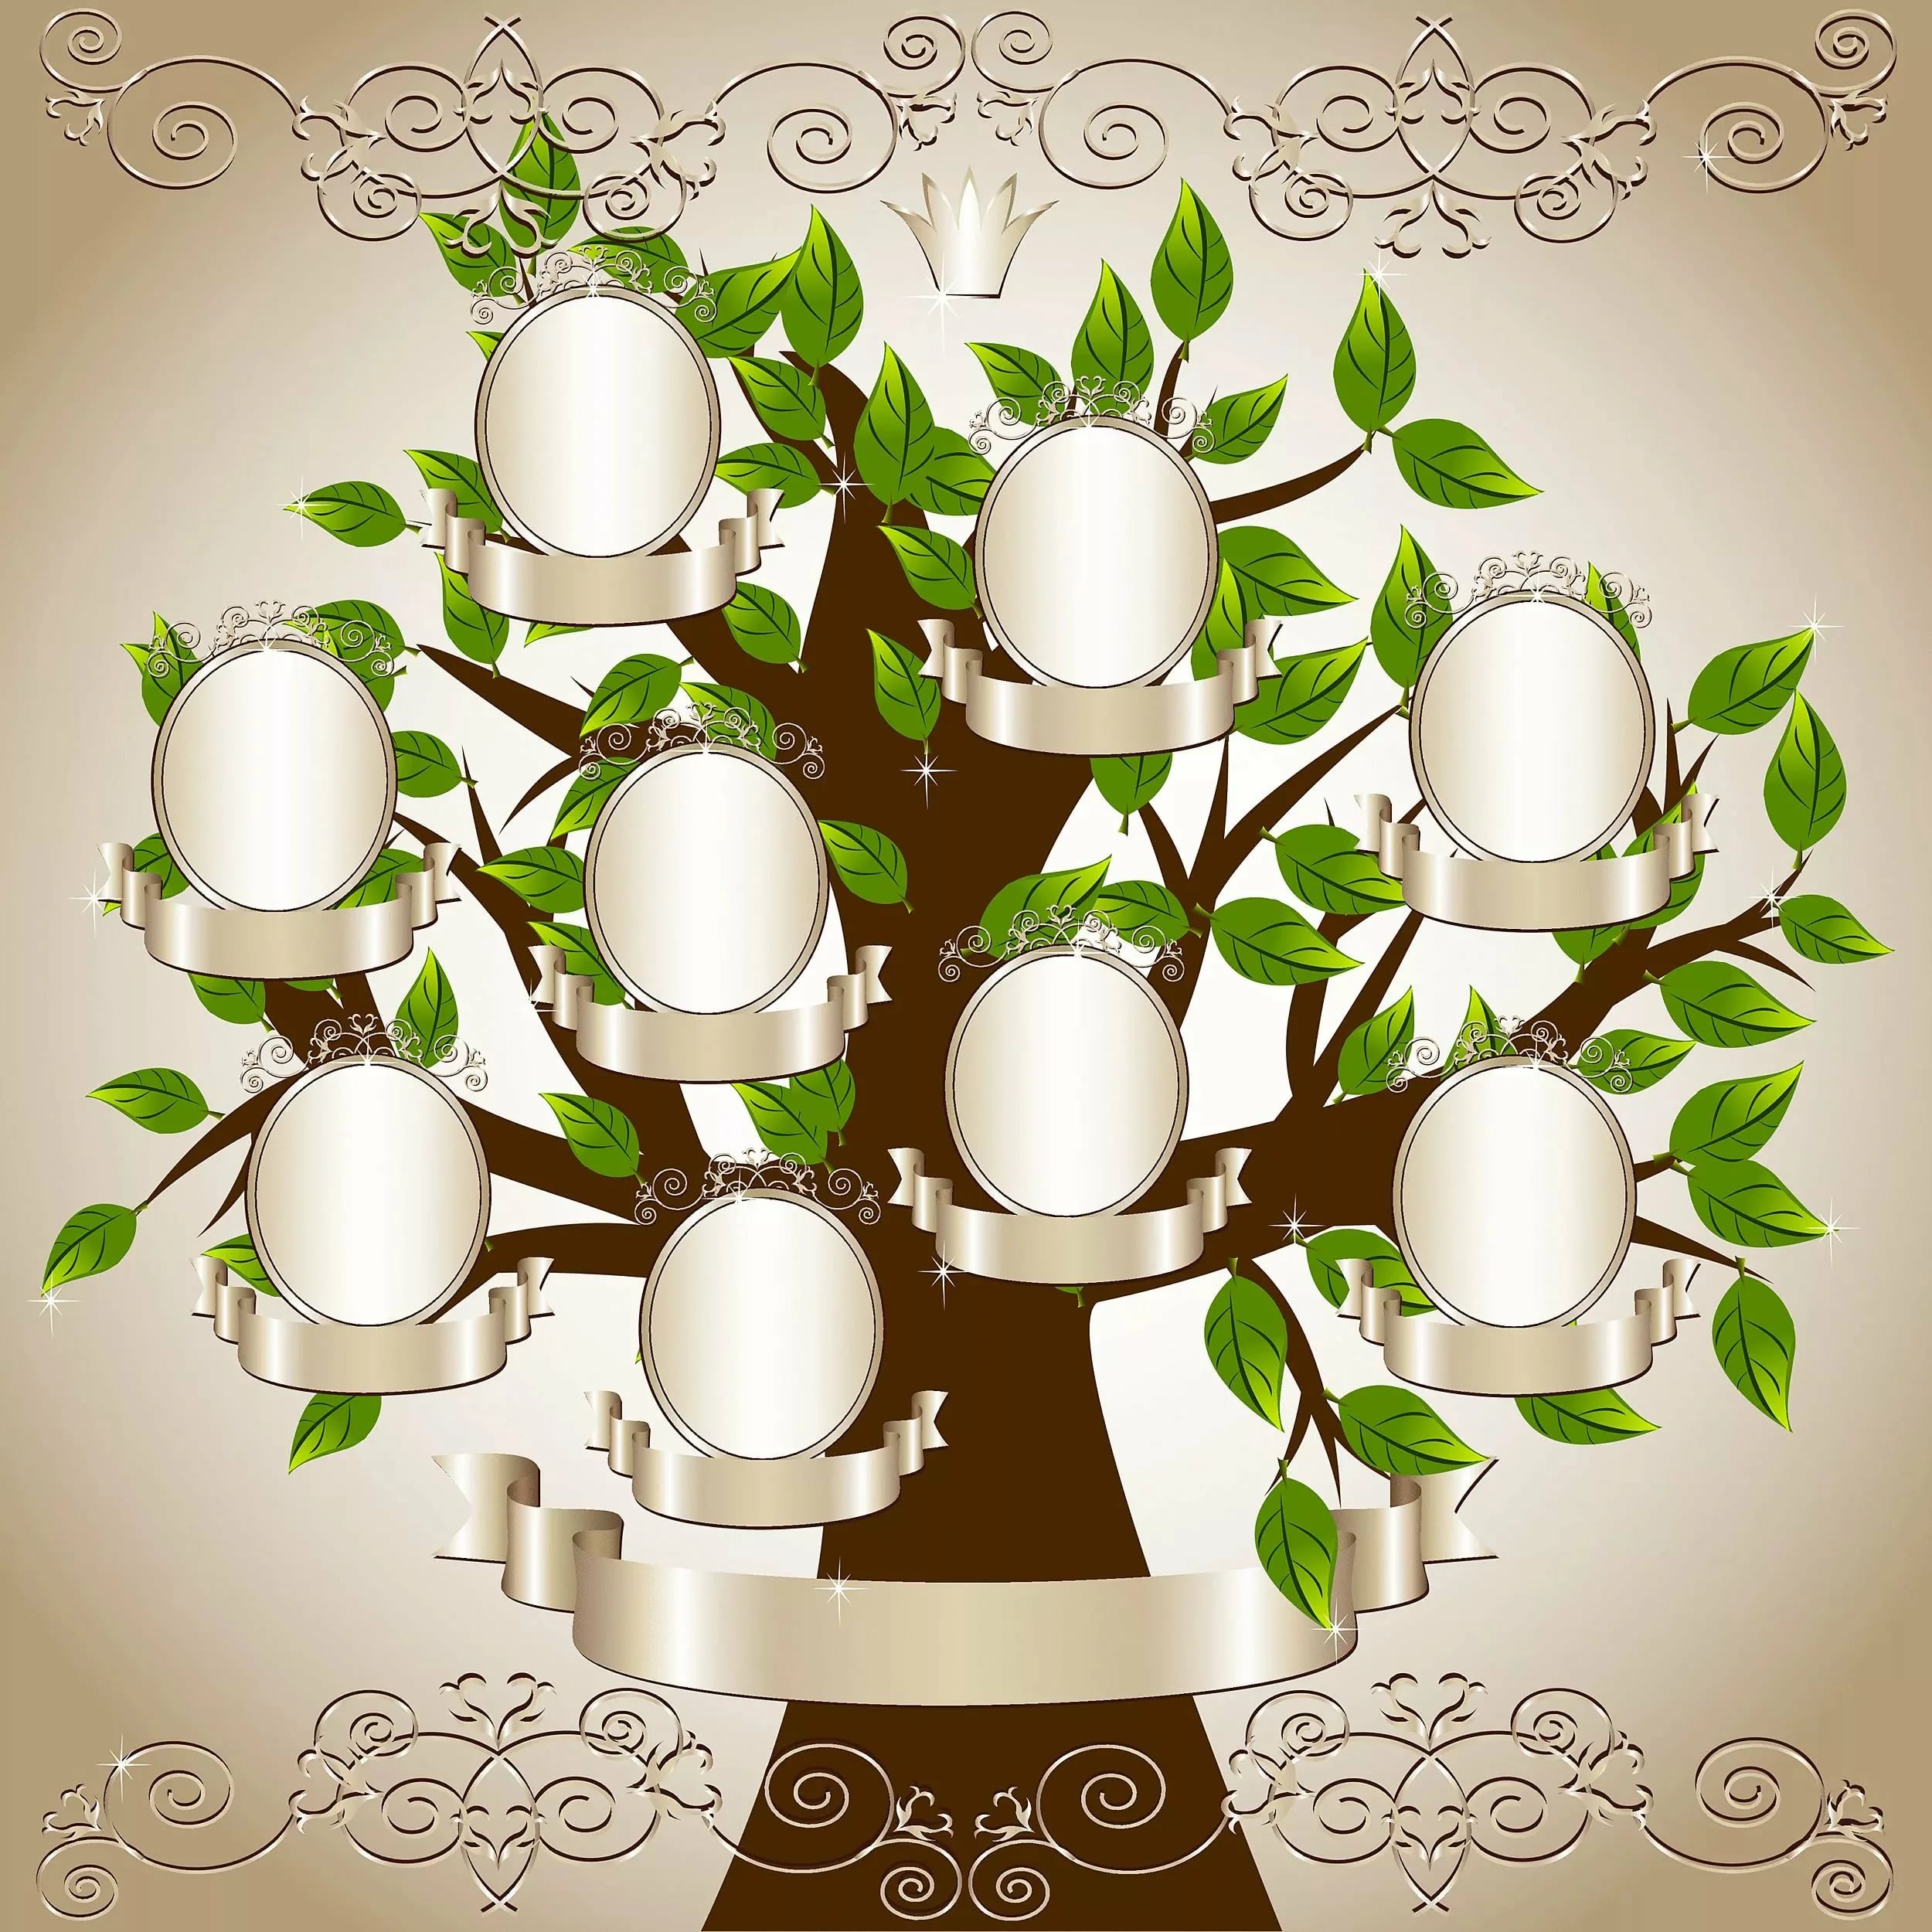 Родословное дерево. Родовое дерево семьи Зобенко. Древо семьи 11 человек. Макет генеалогического дерева. Генеалогическое дерево шаблон.